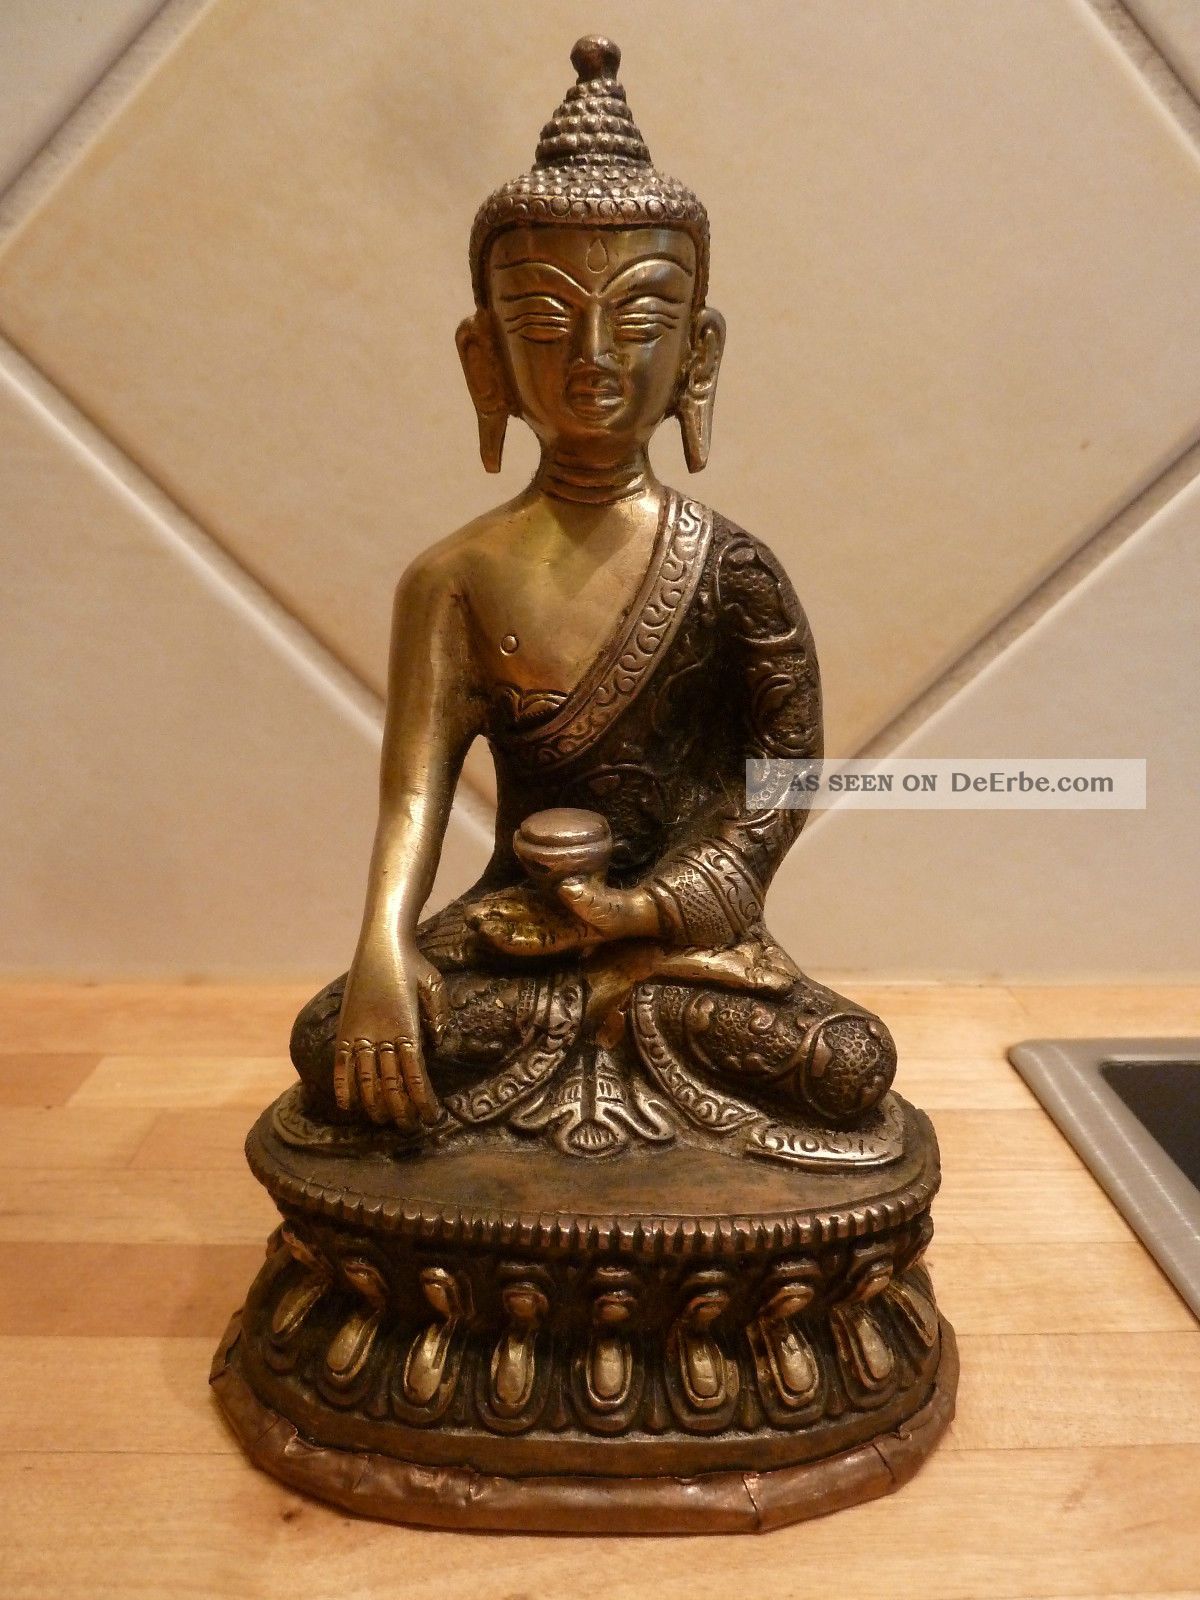 Hand Crafted Buddha Statue Tibet Buddhismus 900g Messing Silber Kupfer Nepal Entstehungszeit nach 1945 Bild